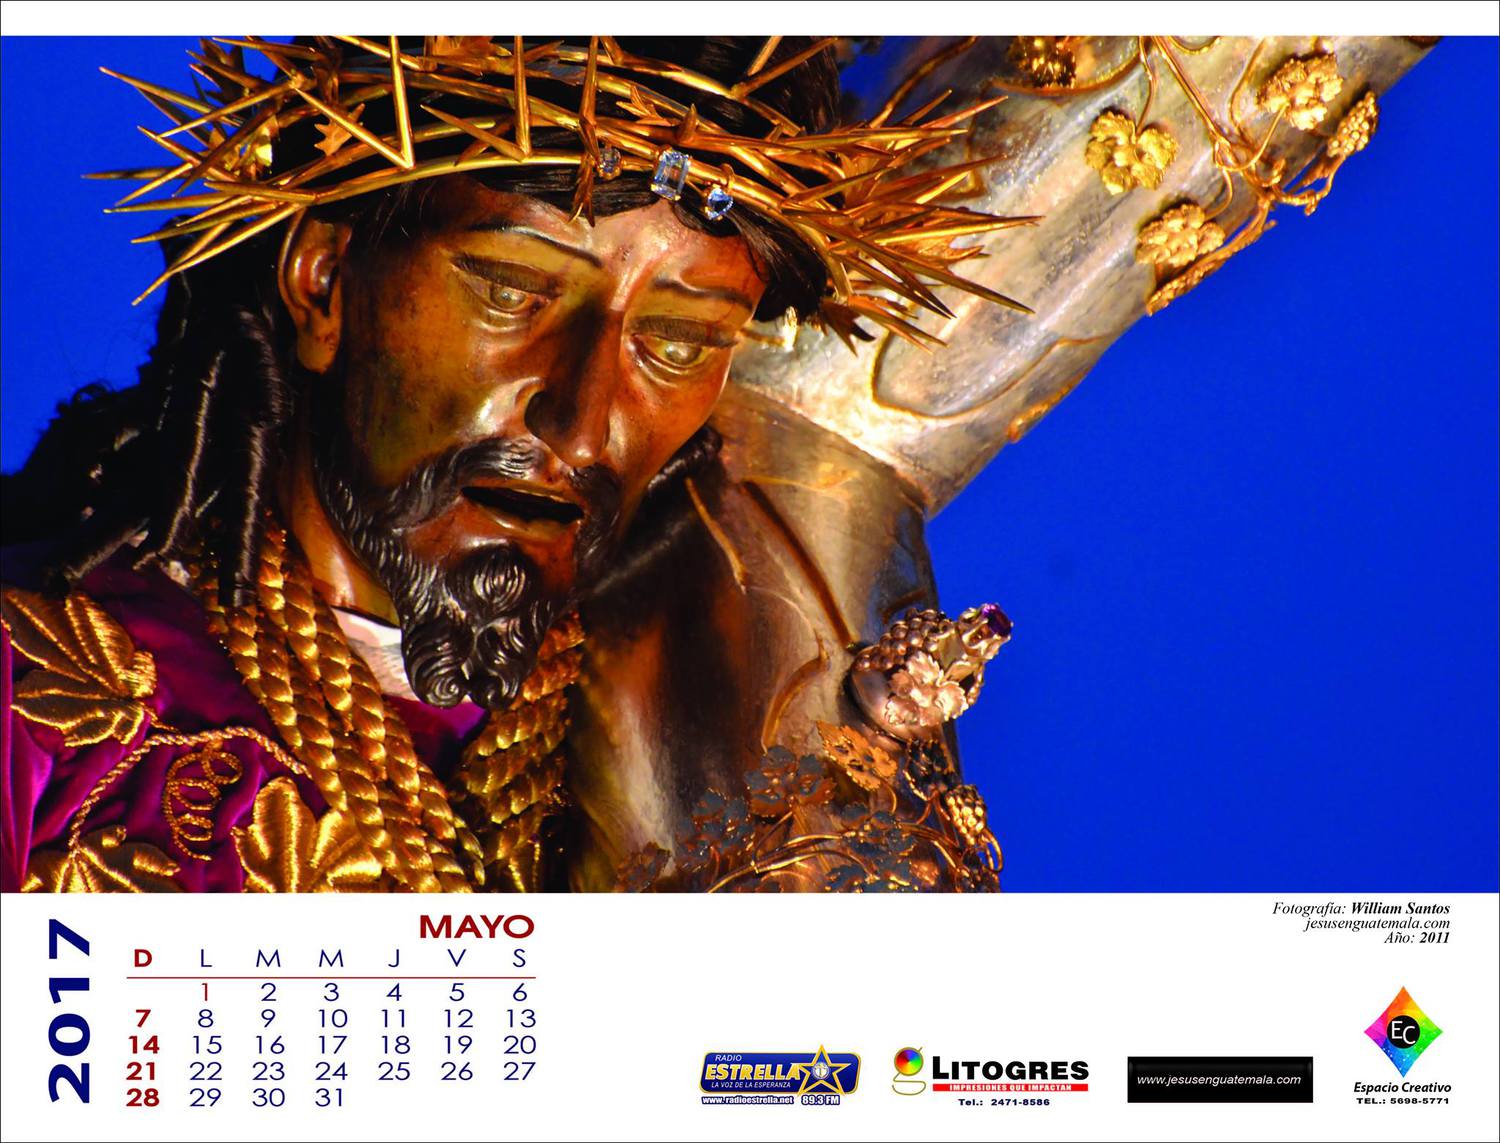 Calendario del Cucurucho centenario de Jesús de Candelaria